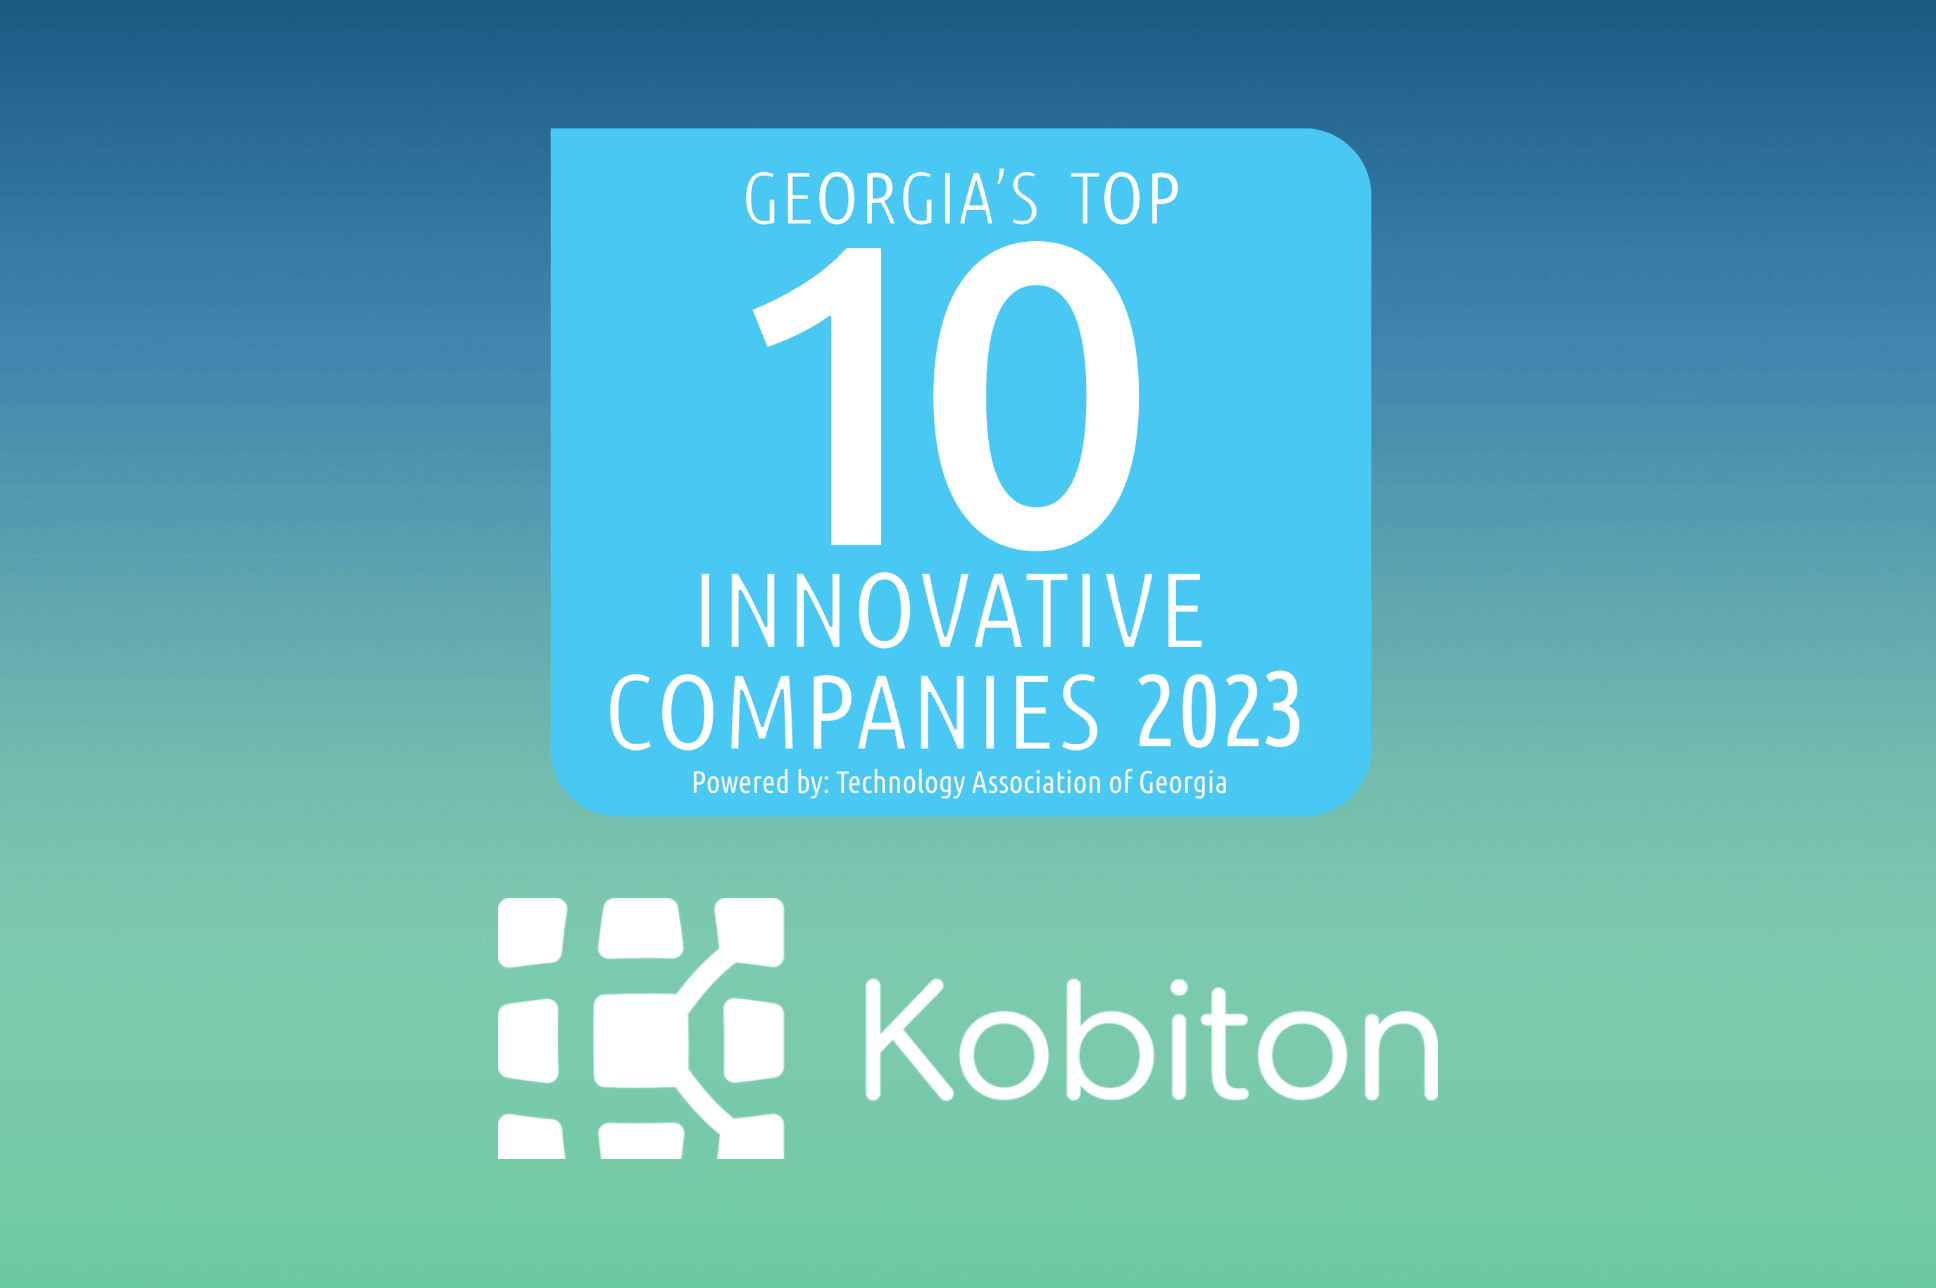 Kobiton as Top 40 Innovative Company